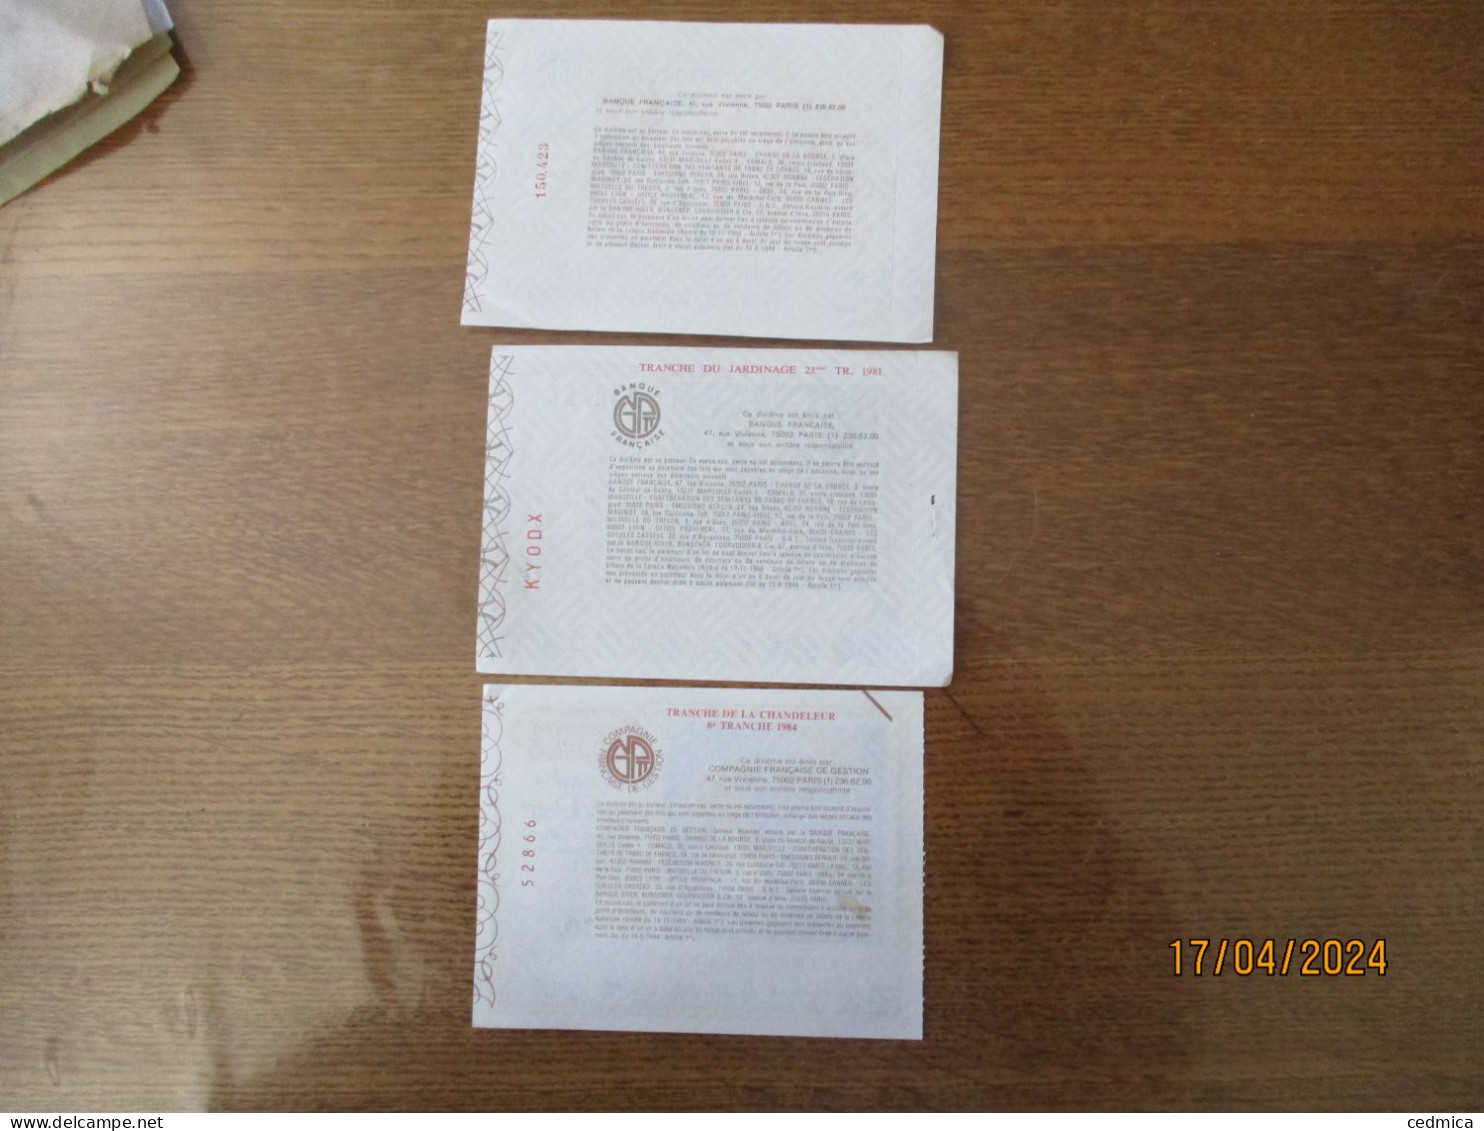 3 BILLETS DE LOTERIE TRANCHE DE L'ARLEQUIN OCTOBRE 1980,DU JARDINAGE 1er AVRIL 1981,DE LA CHANDELEUR 1er FEVRIER 1984 - Billetes De Lotería